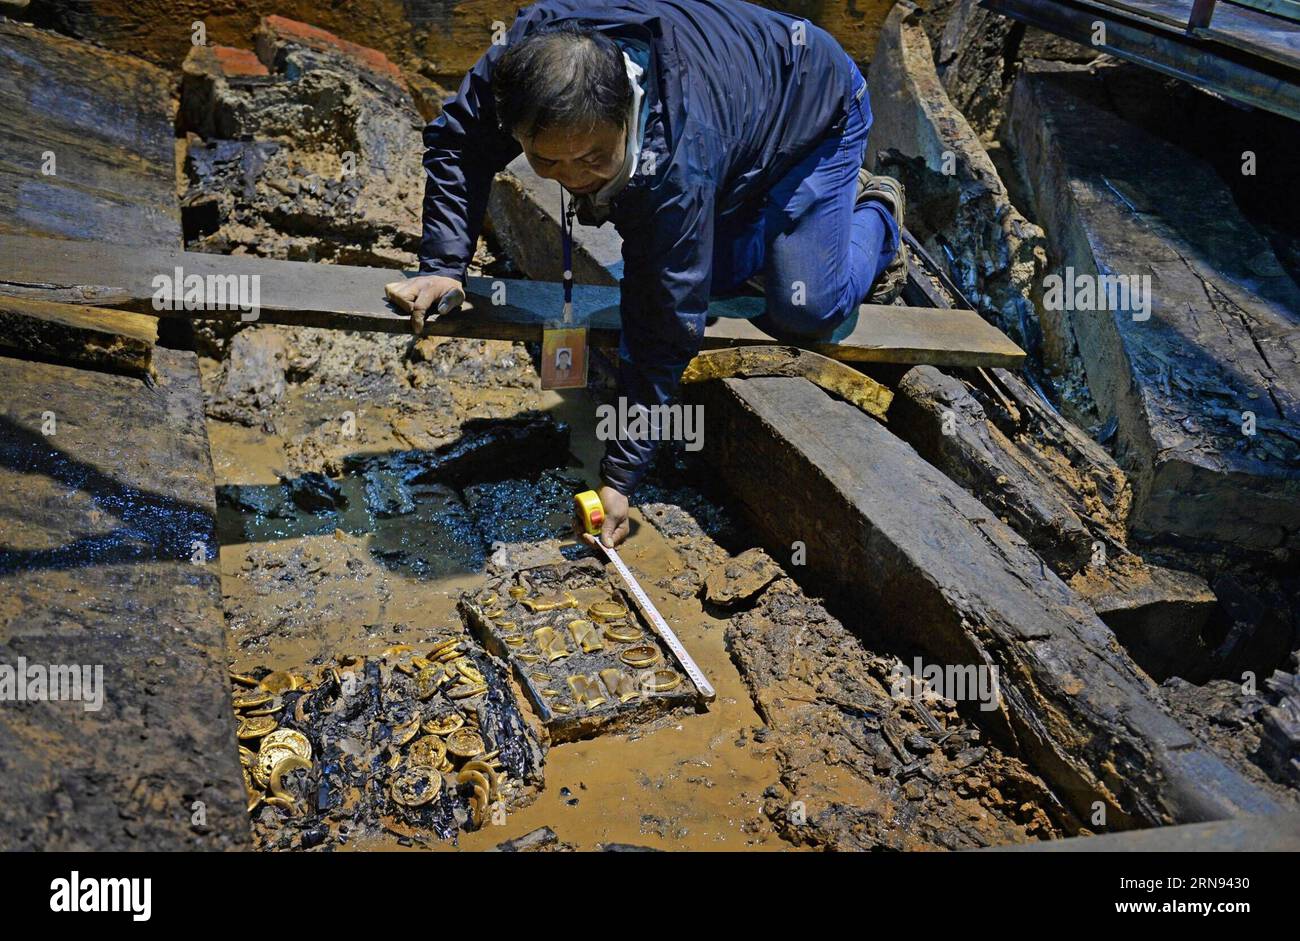 (151117) -- NANCHANG, 17. November 2015 -- ein Archäologe misst die Goldgegenstände in einem aristokratischen Grab, das aus der westlichen Han-Dynastie (206 v. Chr. - 24 n. Chr.) stammt, in Nanchang, der Hauptstadt der ostchinesischen Provinz Jiangxi, 17. November 2015. Chinesische Archäologen entdeckten am Dienstag 75 Goldmünzen und hufförmige Ingots im Grab. Die Goldobjekte -- 25 Goldhufe und 50 sehr große Goldmünzen -- sind die größte Einzelmenge von Goldgegenständen, die jemals in einem Grab der Han-Dynastie gefunden wurden. ) (zhs) CHINA-NANCHANG-ARCHAEOLOGY (CN) WanxXiang PUBLICATIONxNOTxINxCHN Nanchang Nov 17 2015 to ARCHAEOLOGIST Measures the G Stockfoto